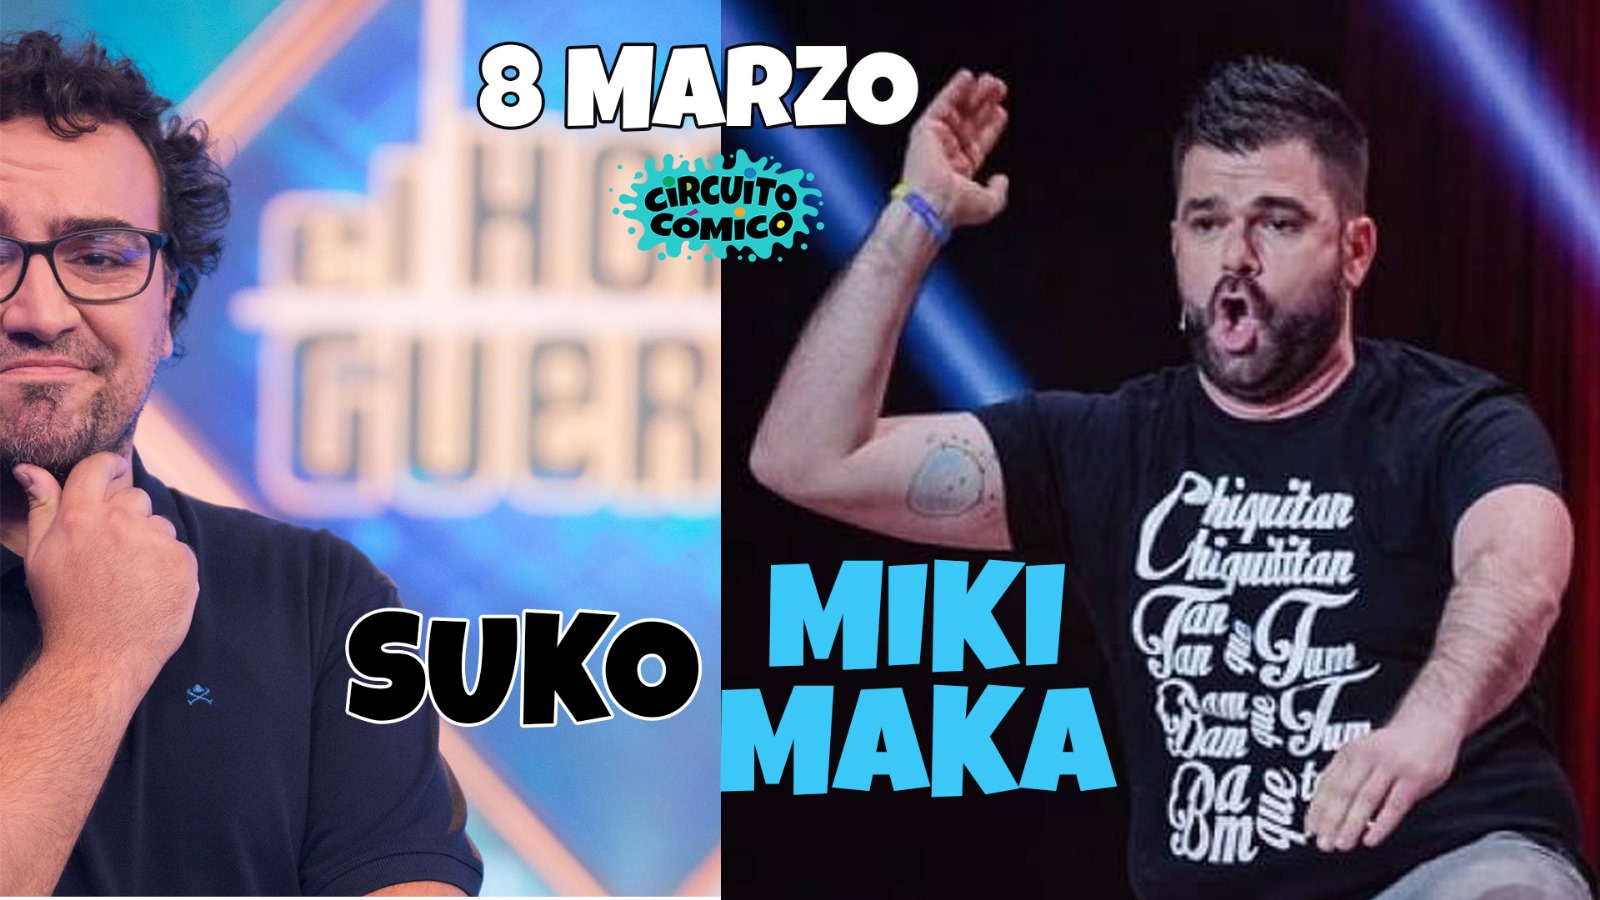 Vuelven los monólogos: Suko y Miki Maka en Madrid - Mutick